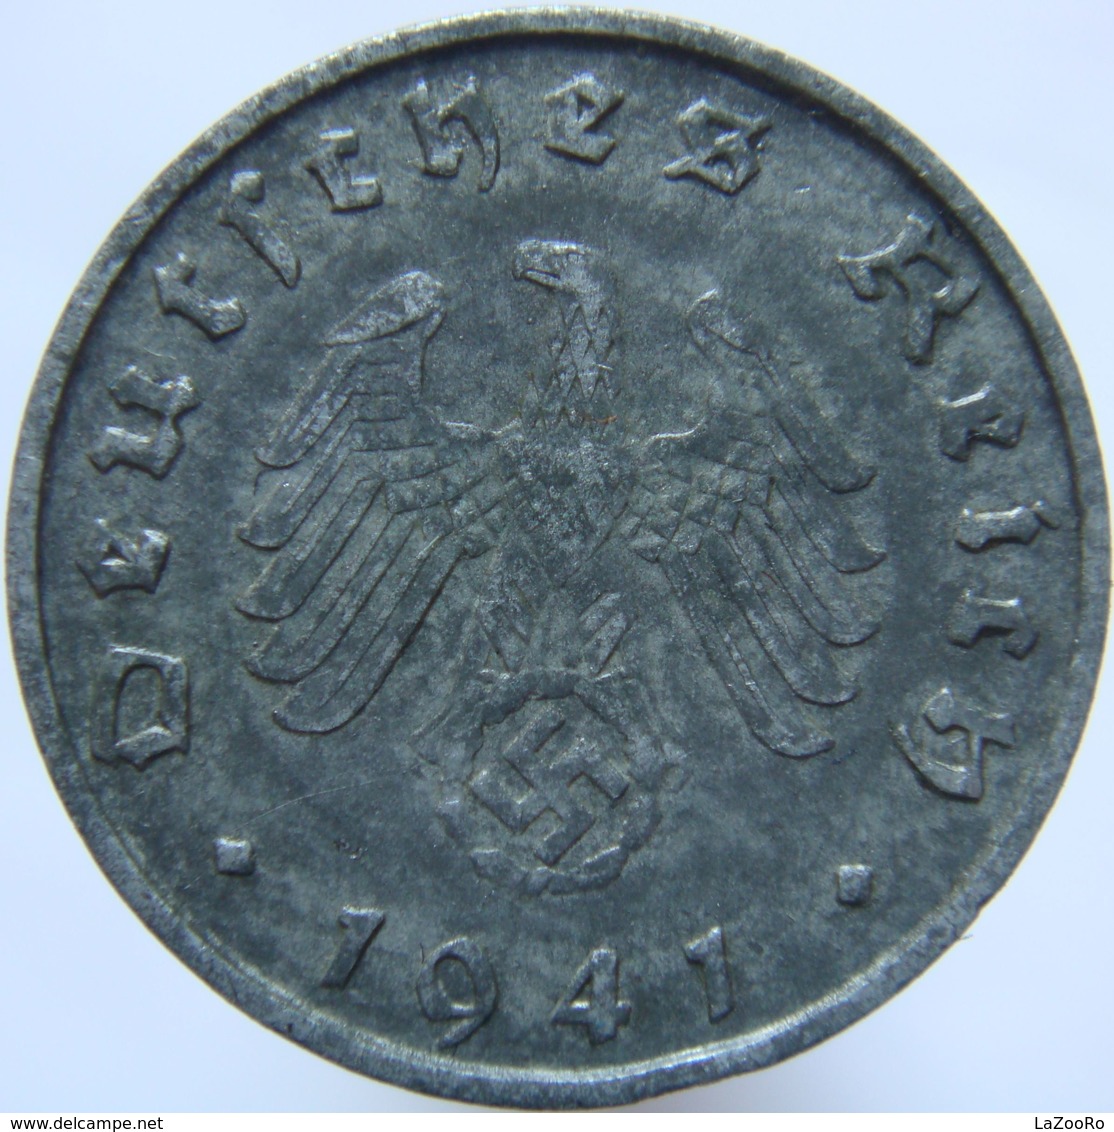 LaZooRo: Germany 10 Pfennig 1941 B XF / UNC - 10 Reichspfennig